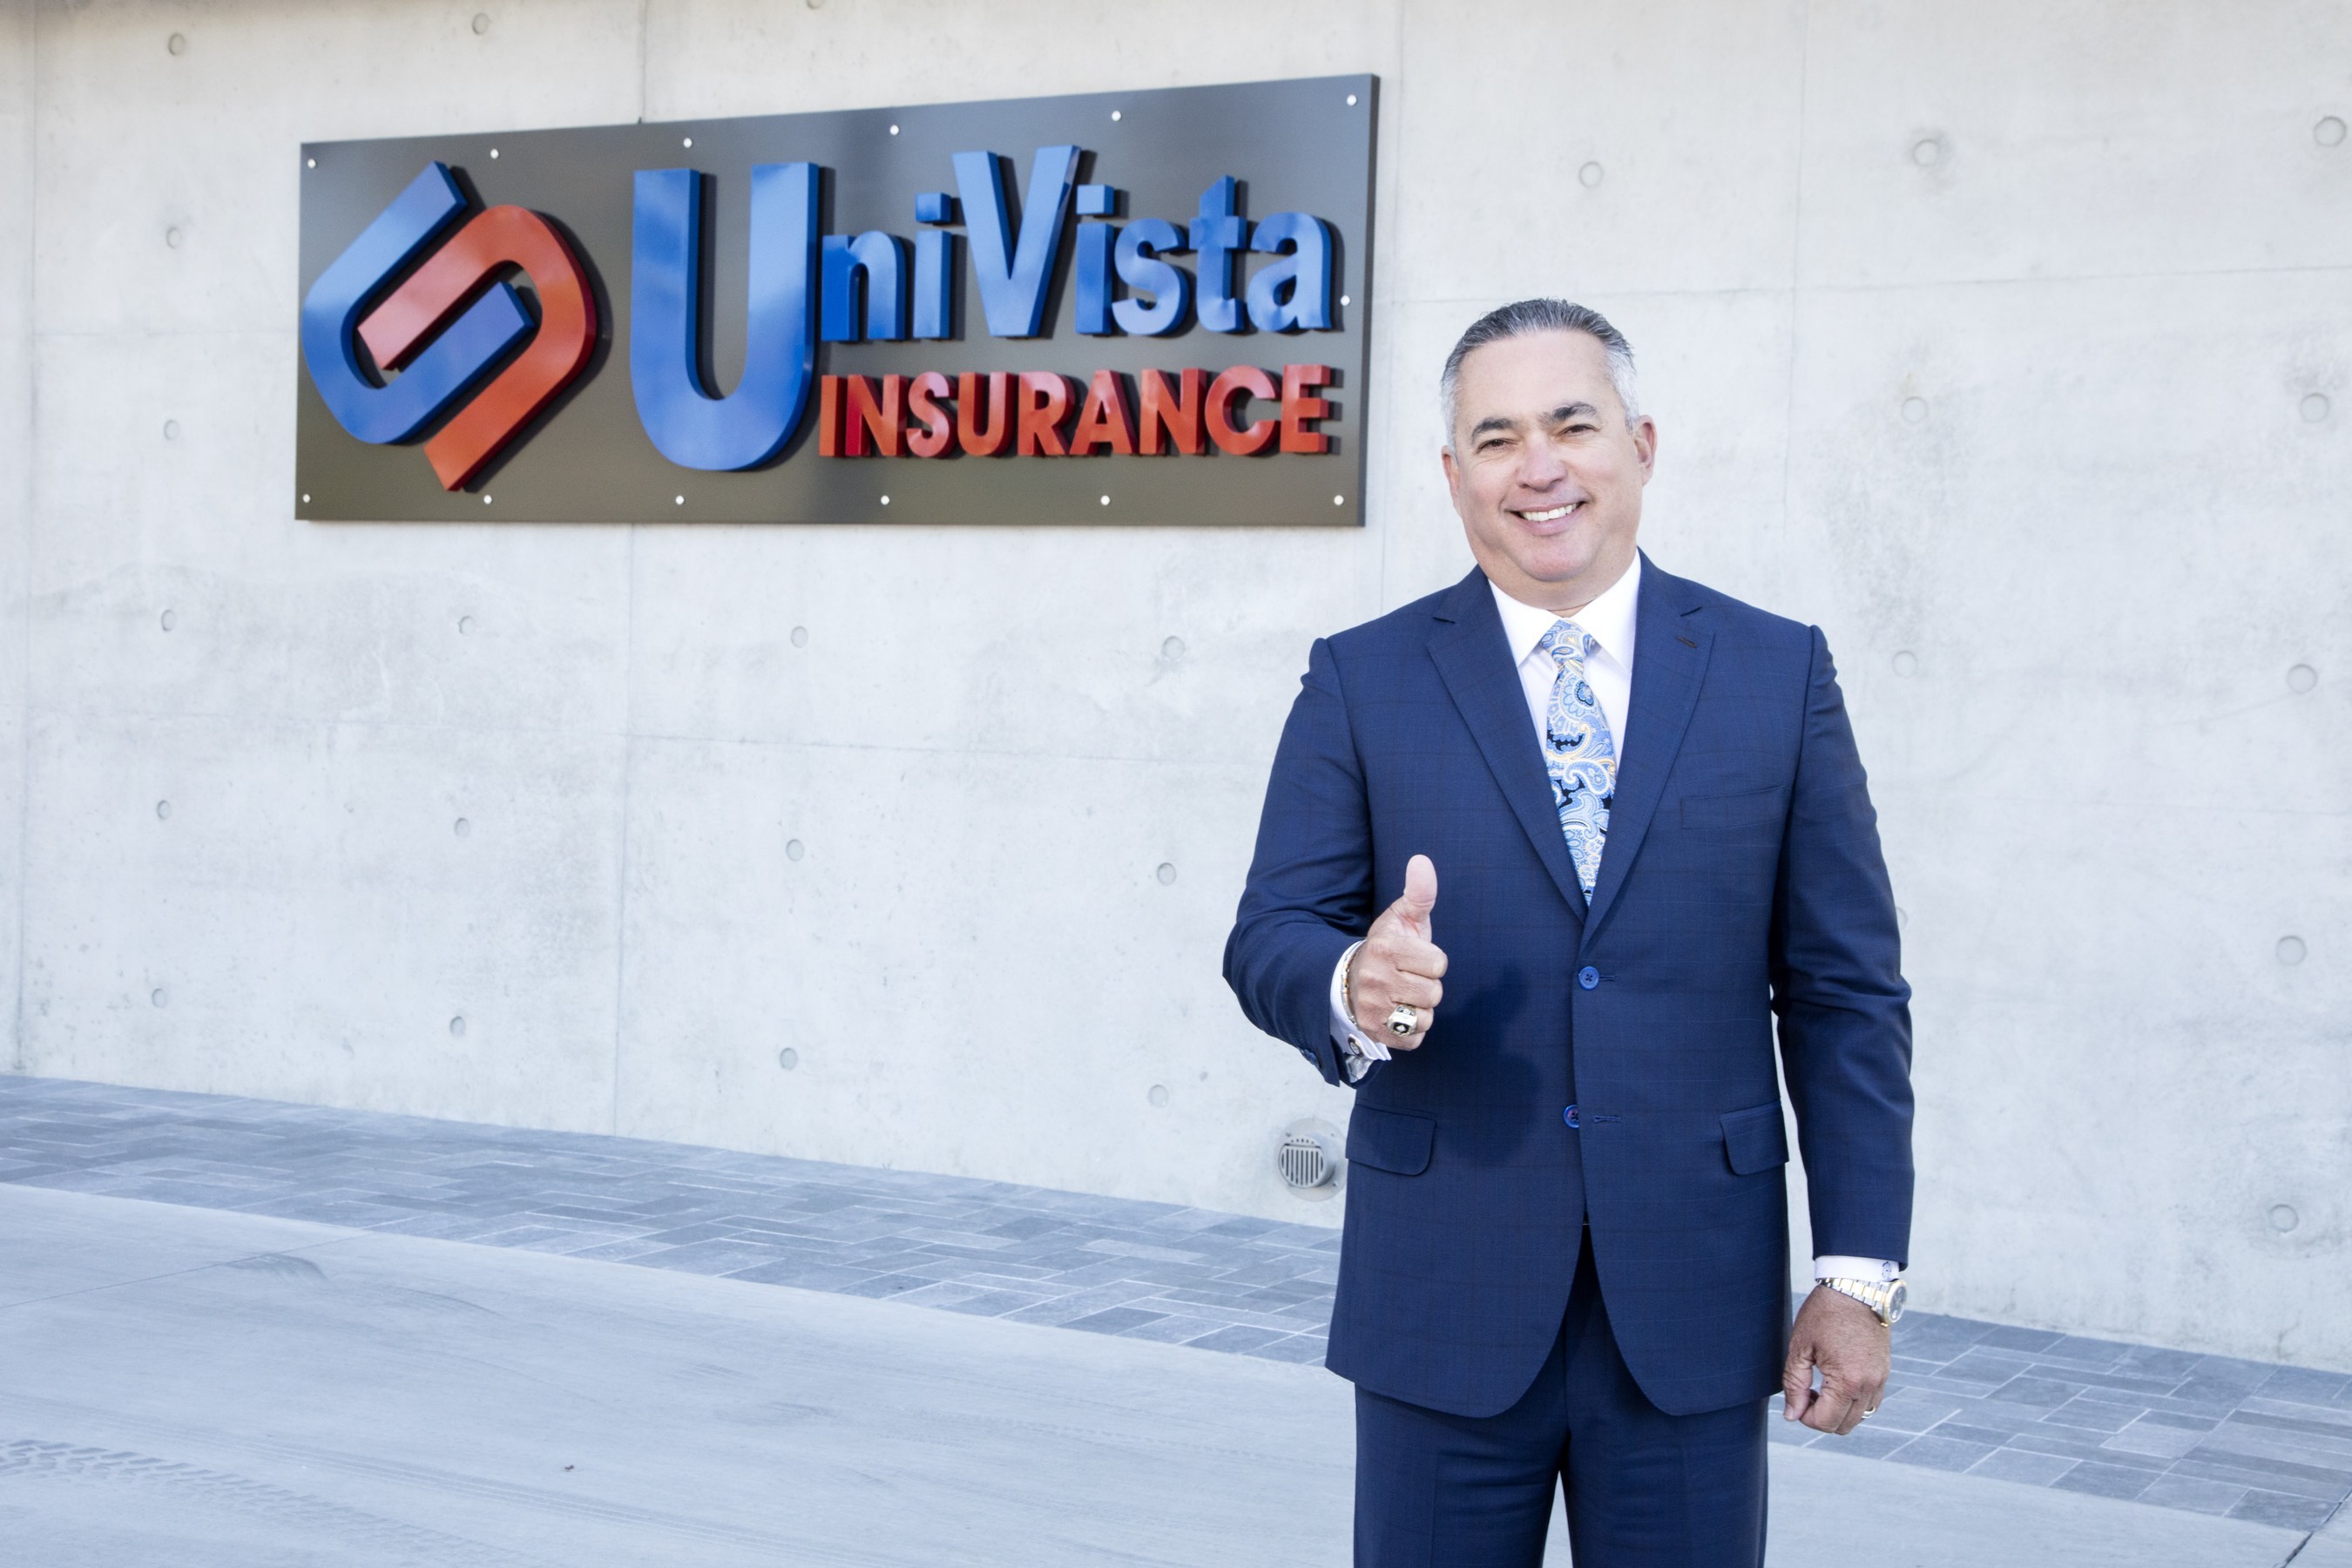 Univista Insurance 10 años de éxitos… ¡y sigue innovando!